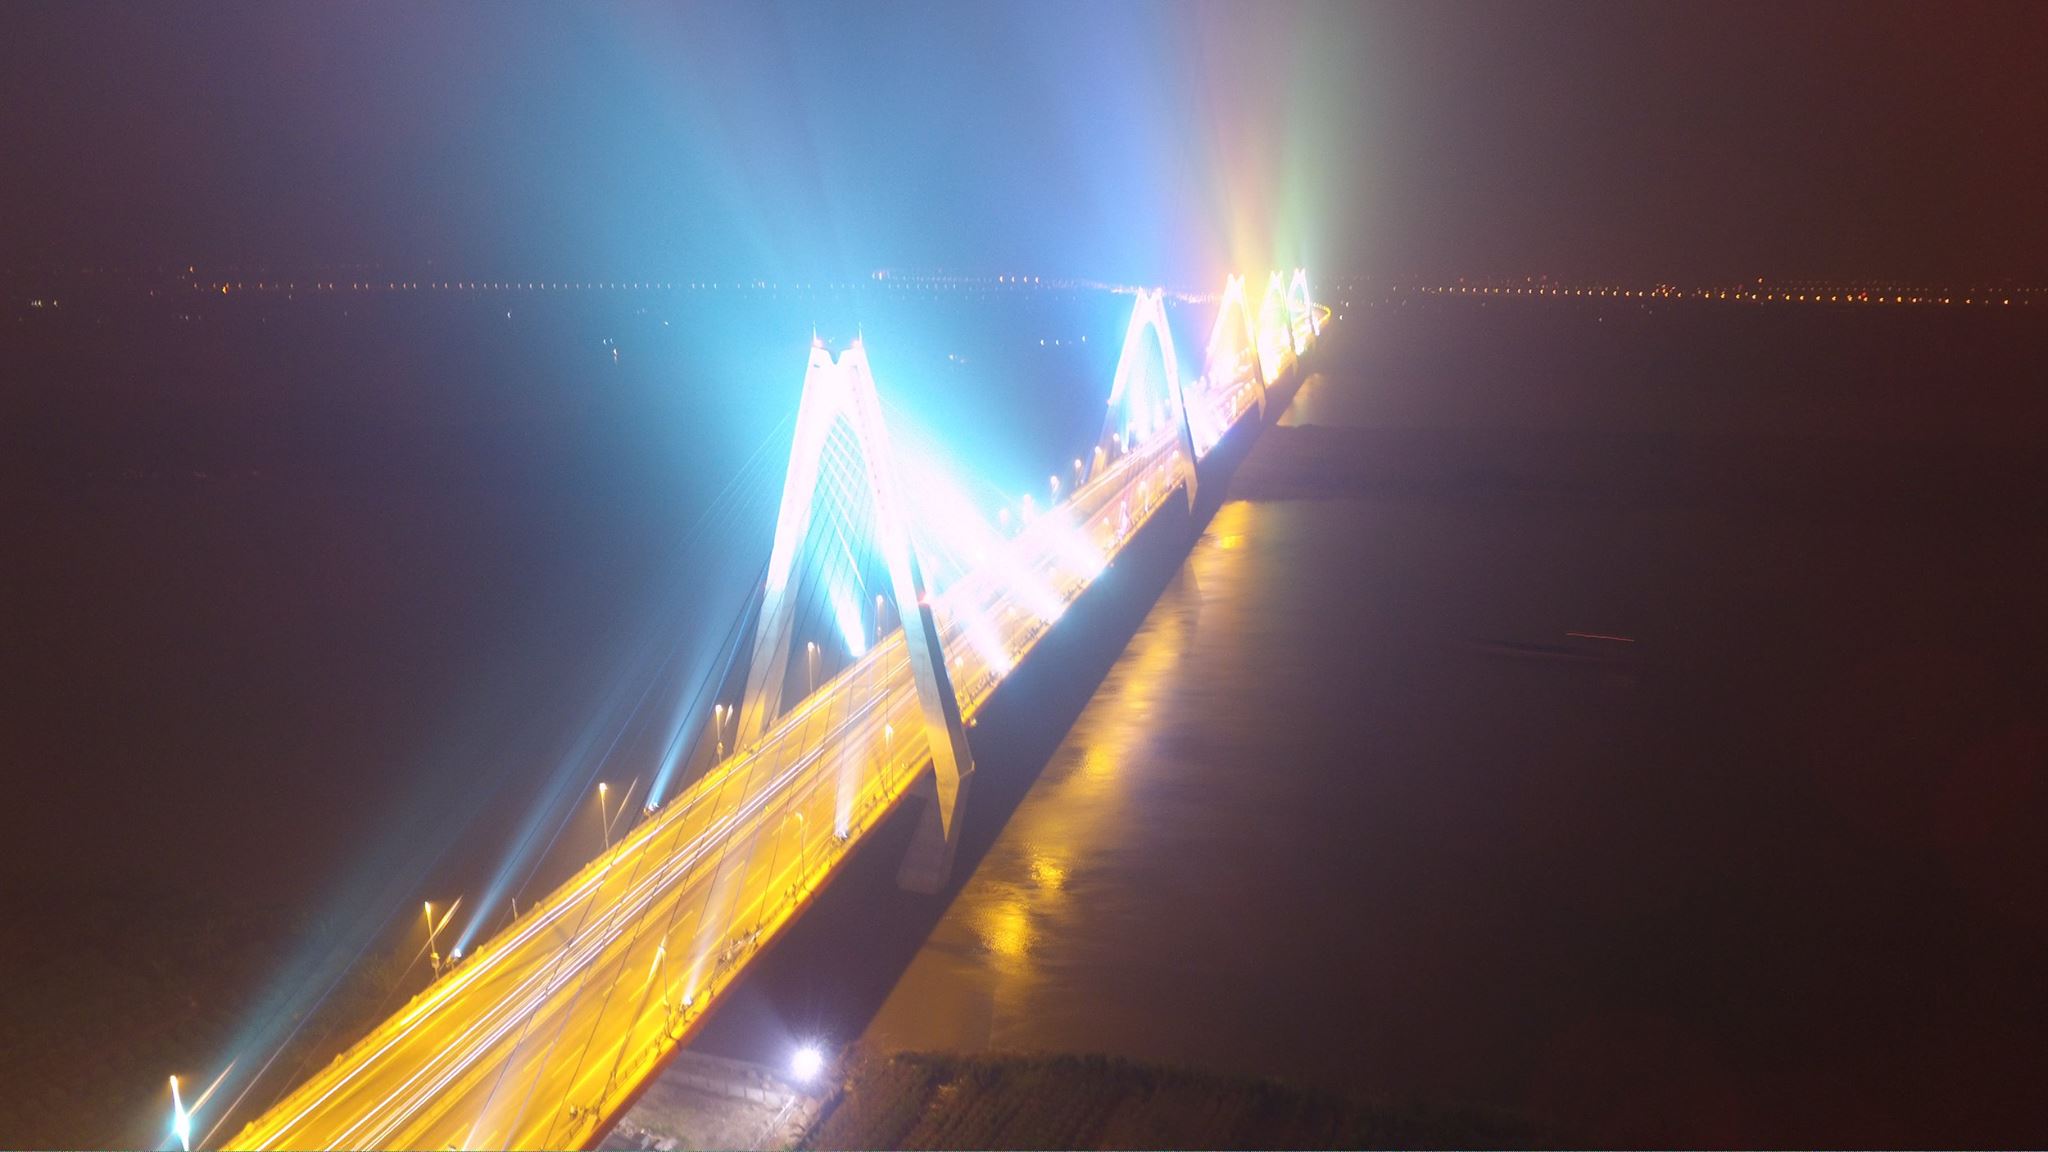 Với yêu cầu kỹ thuật, mỹ thuật, cầu Nhật Tân được thiết kế và xây dựng để trở thành một biểu tượng mới của Thủ đô